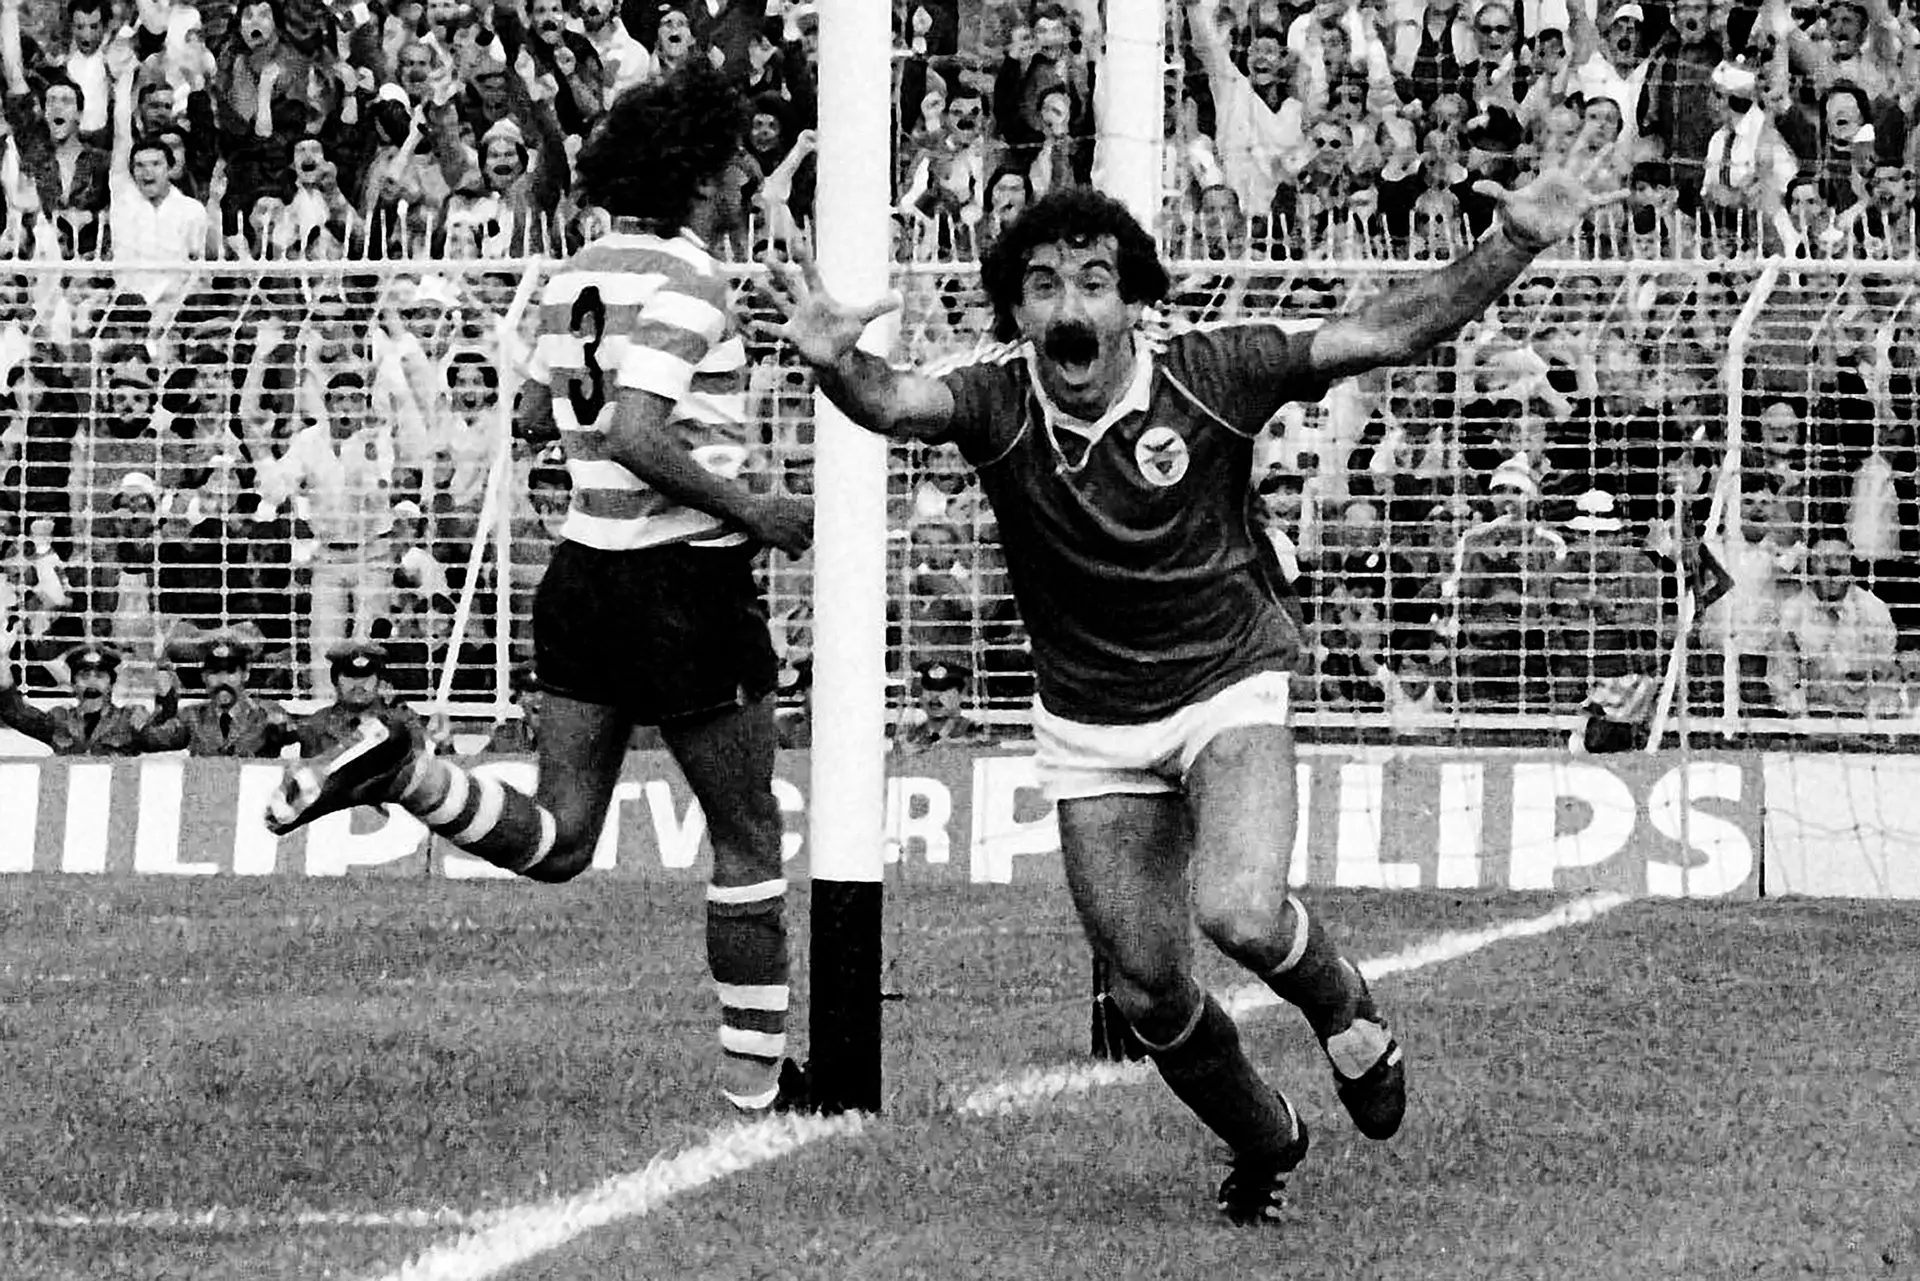 Uma recordação de Nuno Luz "neste dia triste para o futebol português"